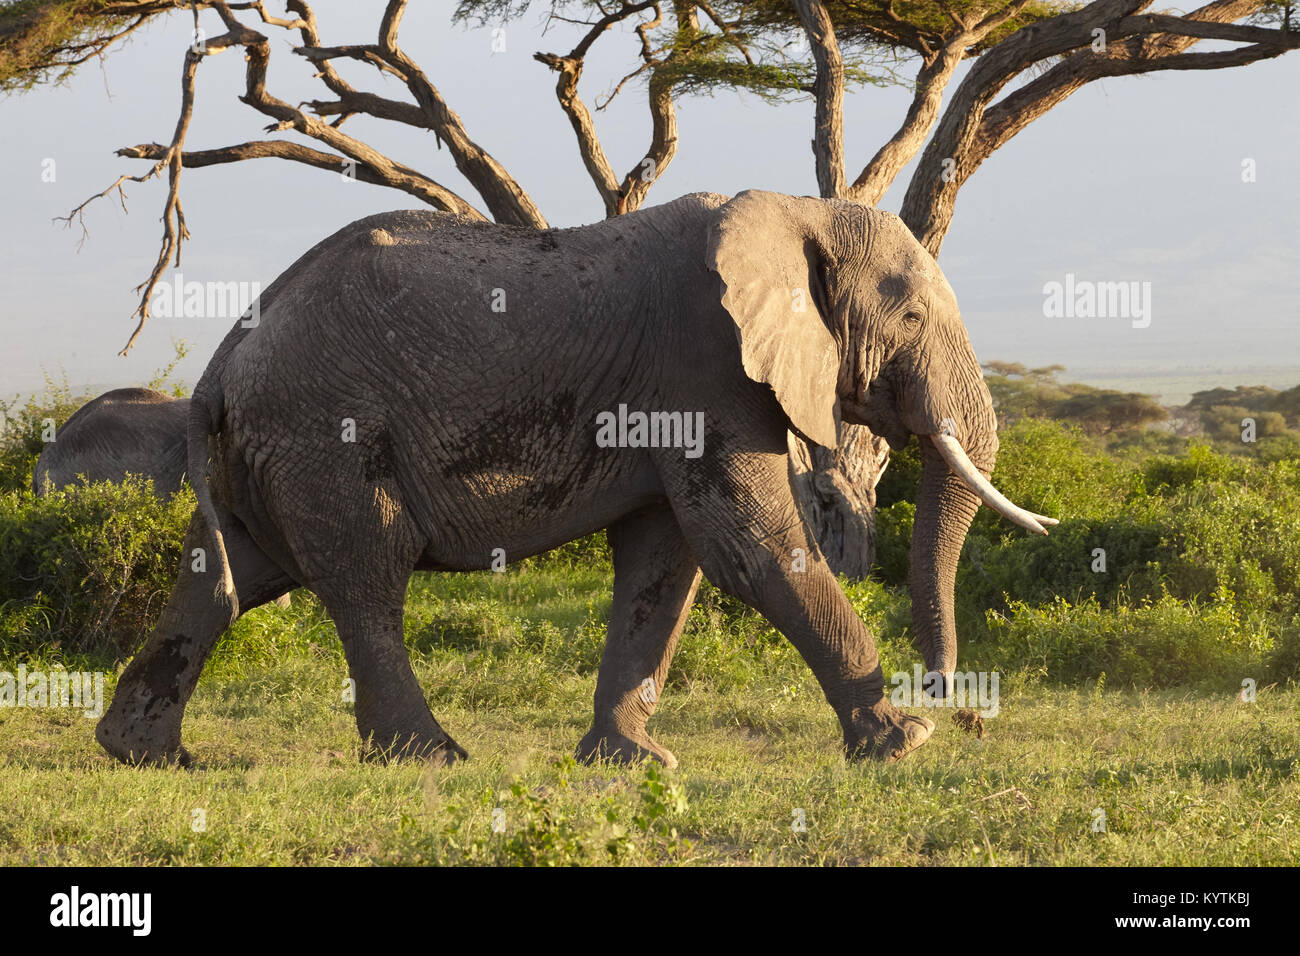 Homme éléphant africain (Loxodonta africana) Balade dans le Parc national Amboseli. Au Kenya. Banque D'Images